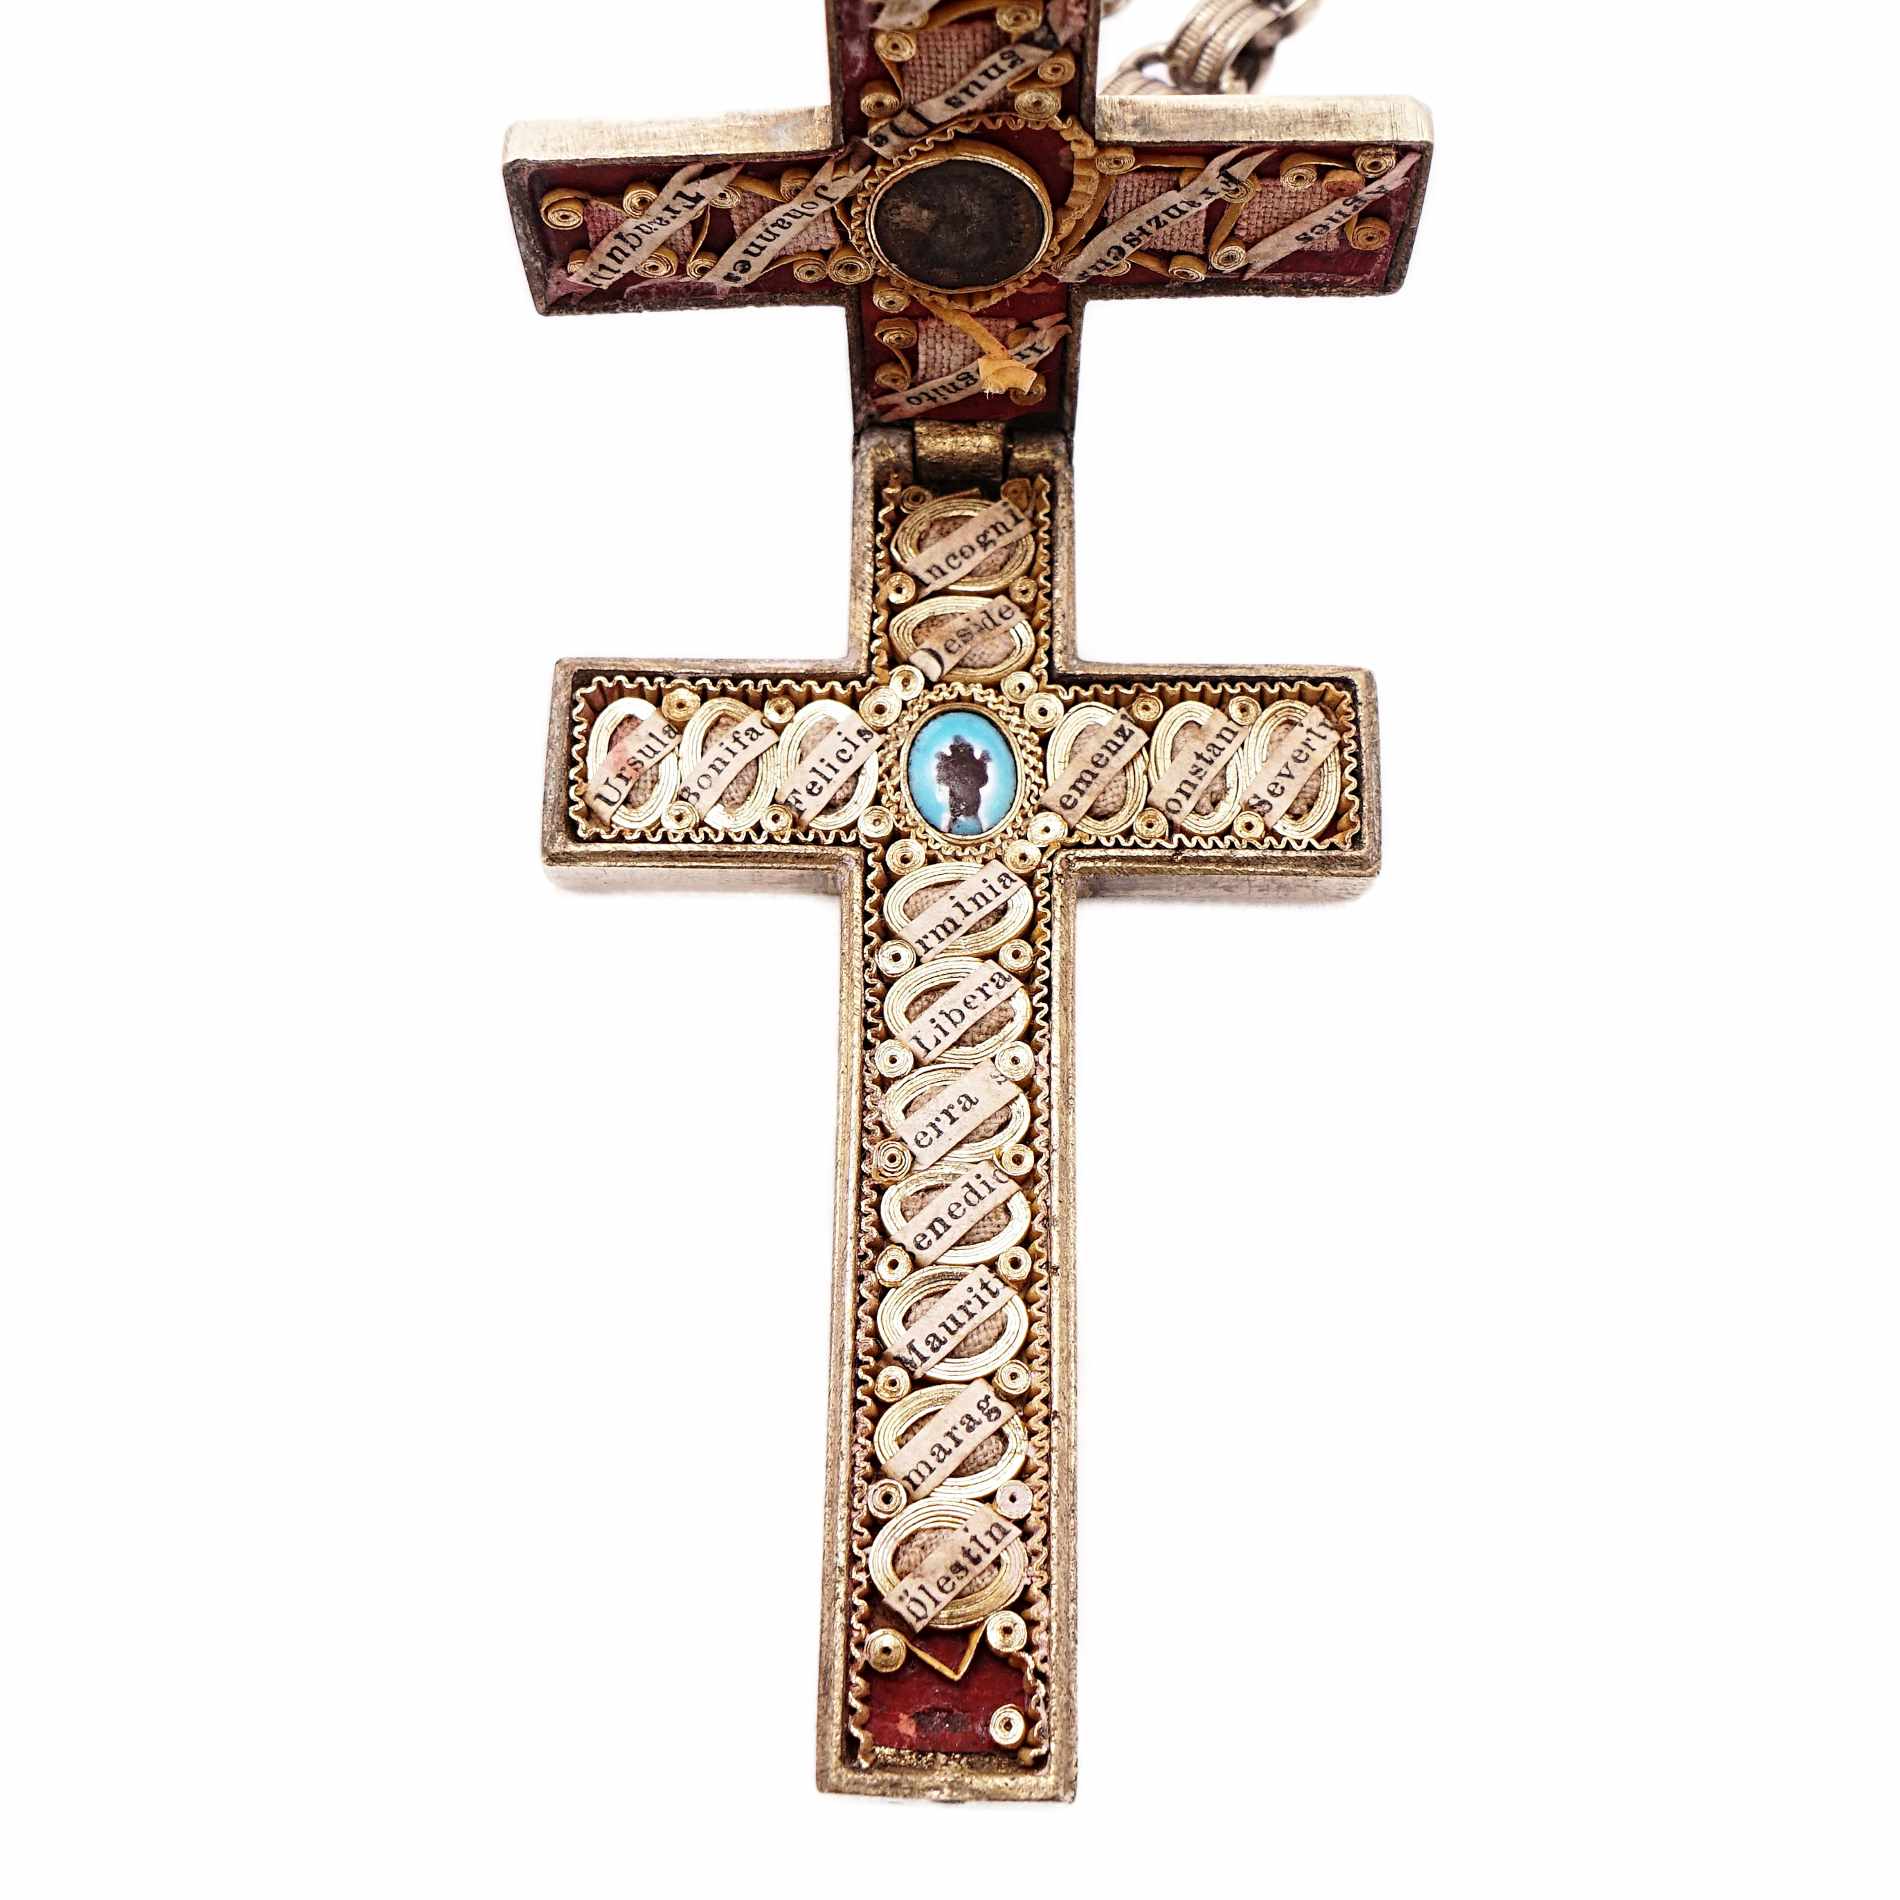 Reliquienkreuz mit 25 Reliquien um 1850